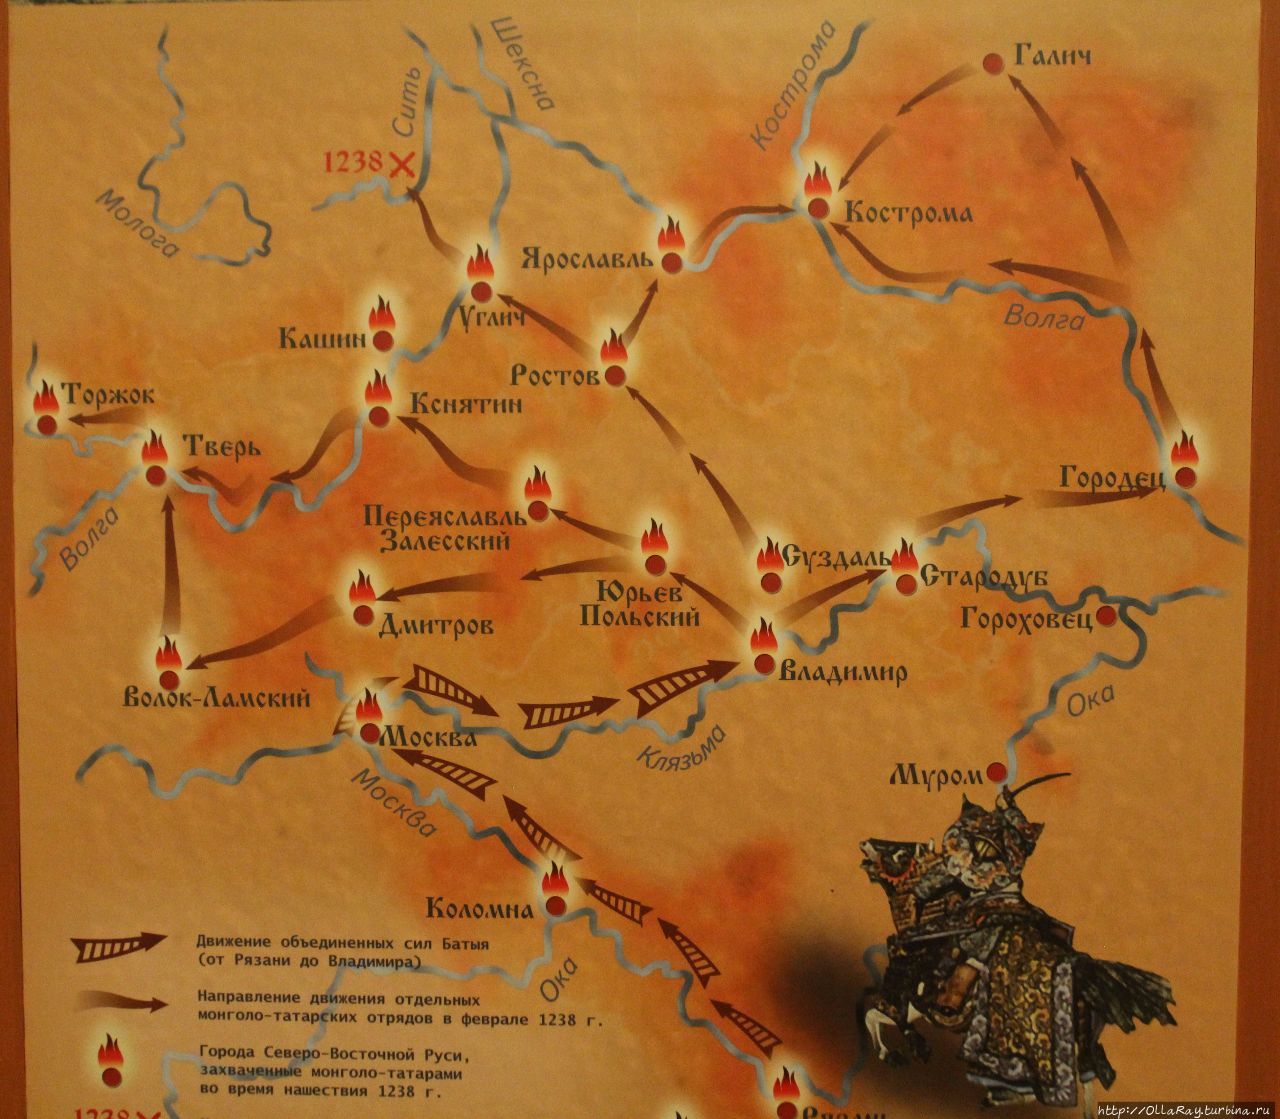 А вот этот стенд повествует о нашествии монгол и татар. Но я вот заметила, что карта удивительным образом совпадает с моим туристическим маршрутом, реализуемым эти два года:))) Суздаль, Россия